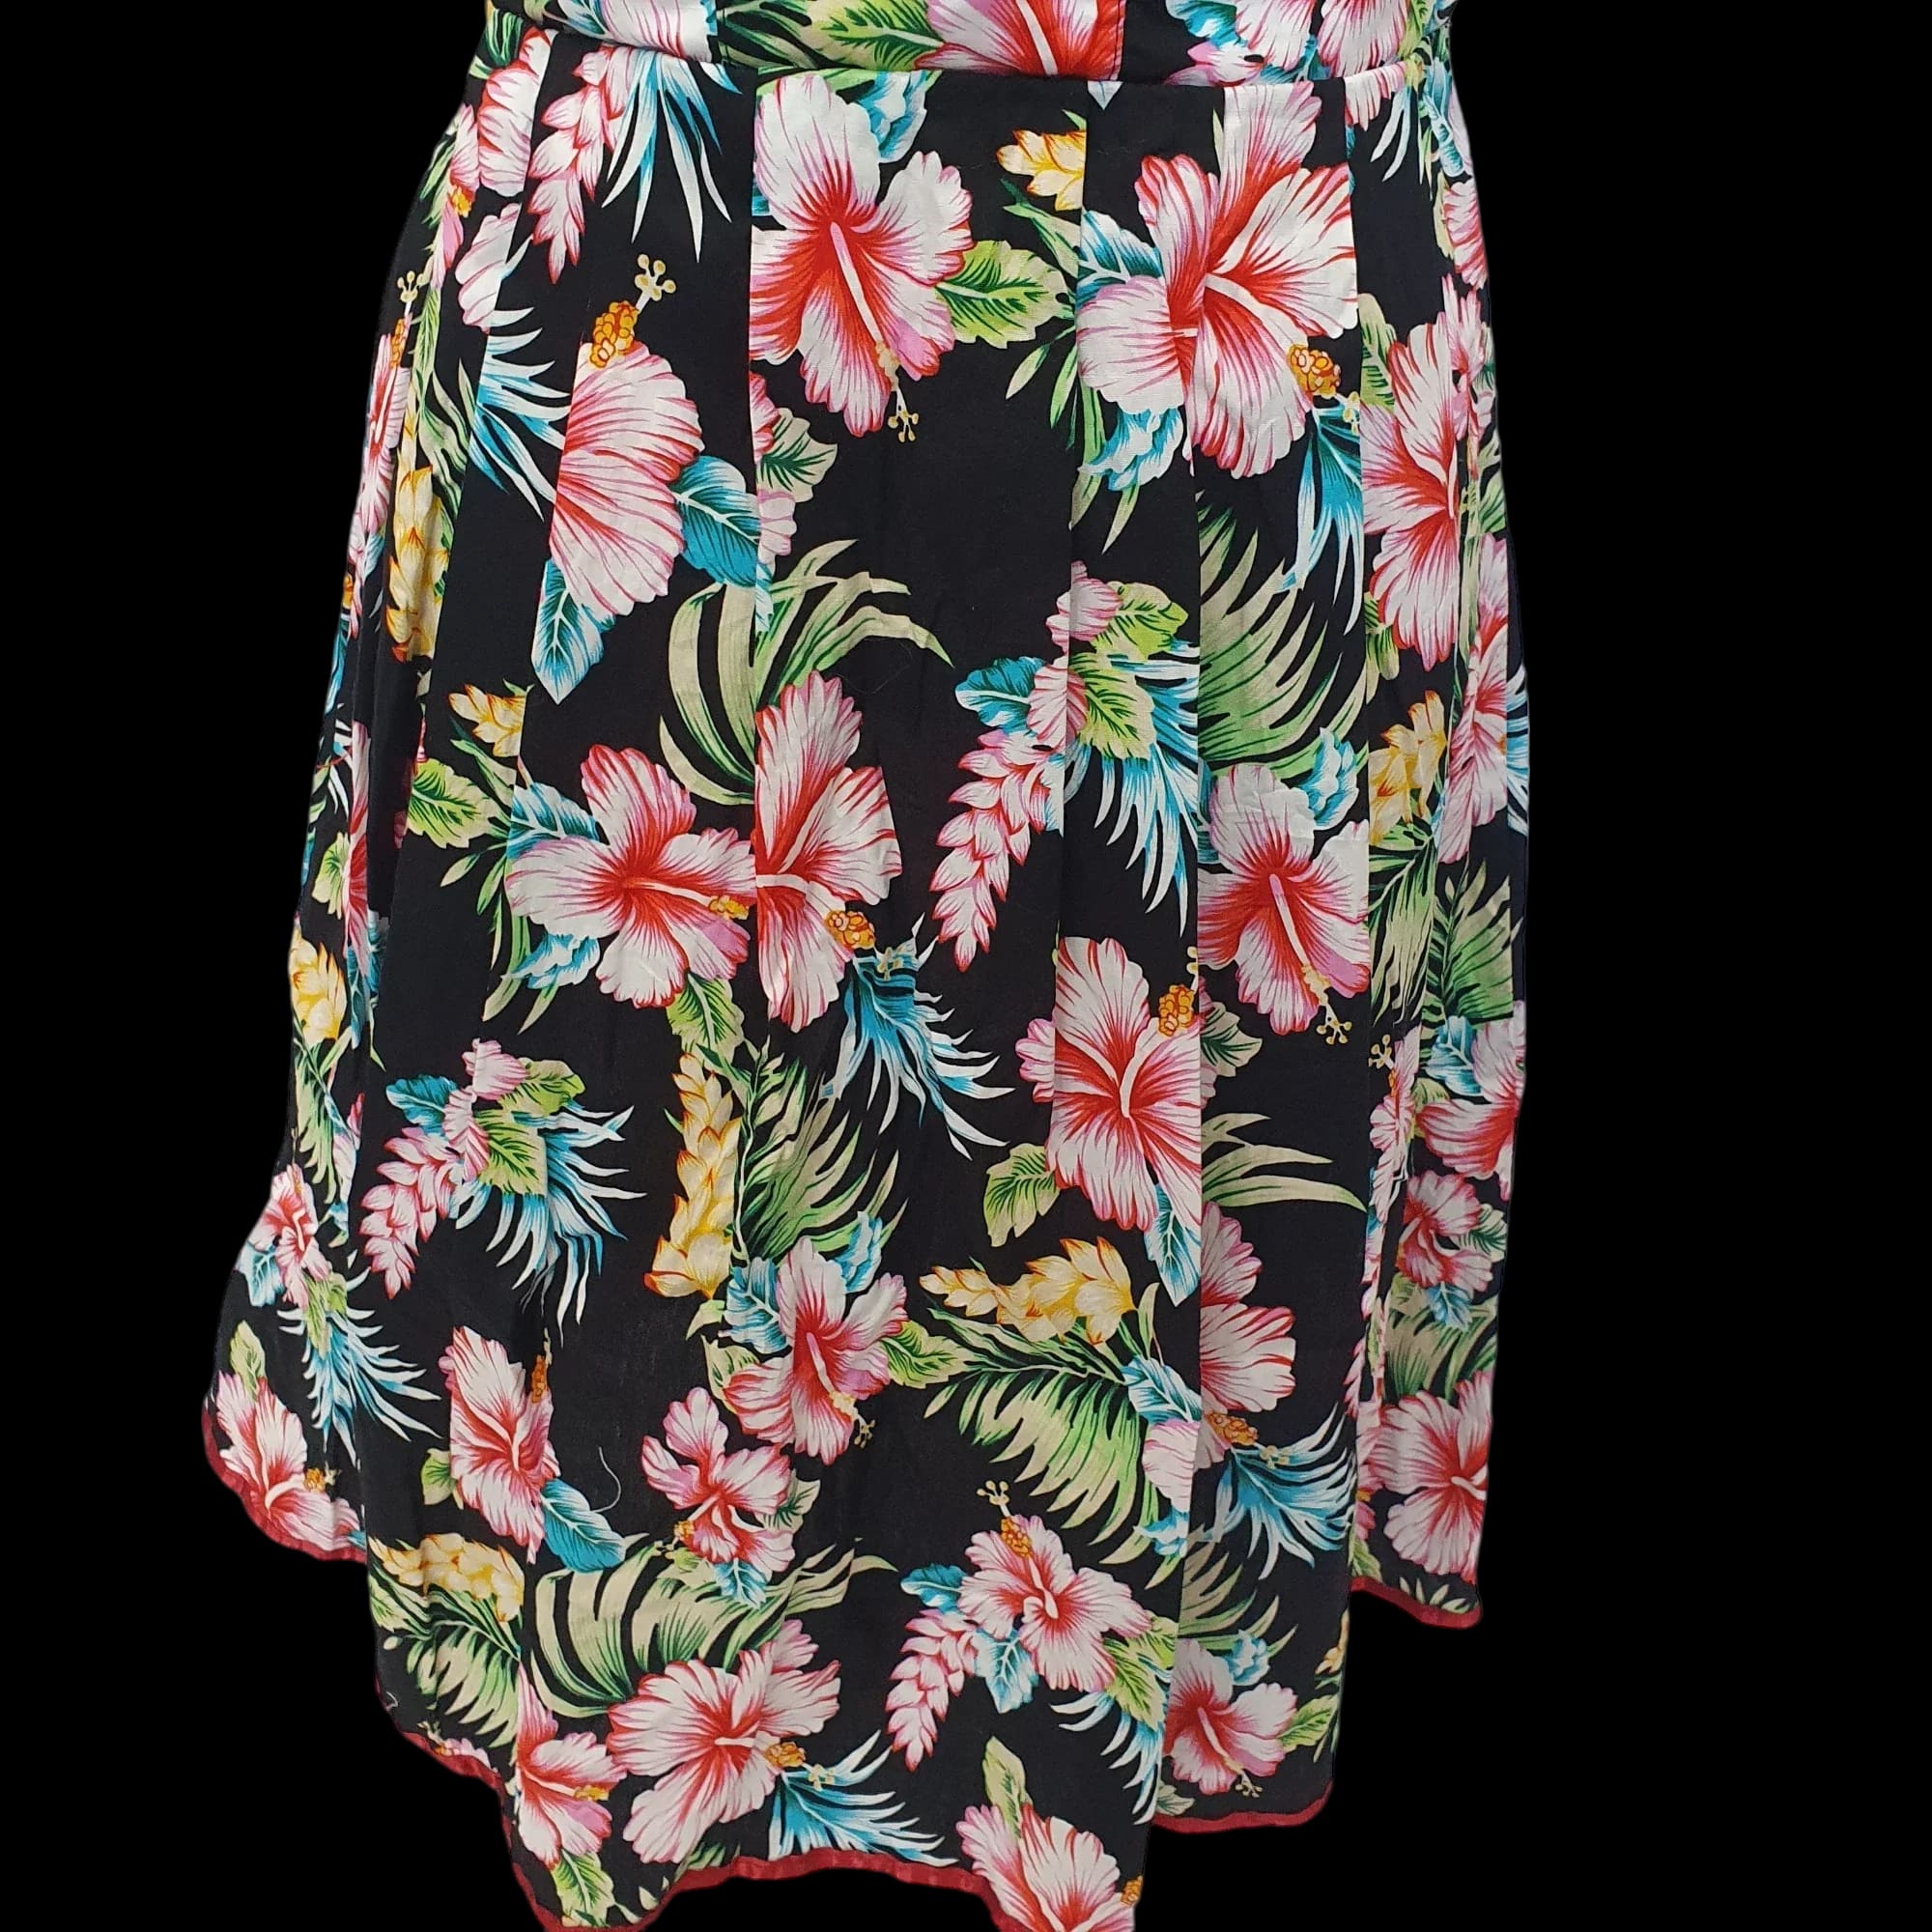 Vintage Floral Handmade Summer Dress Lace Detailing UK 10